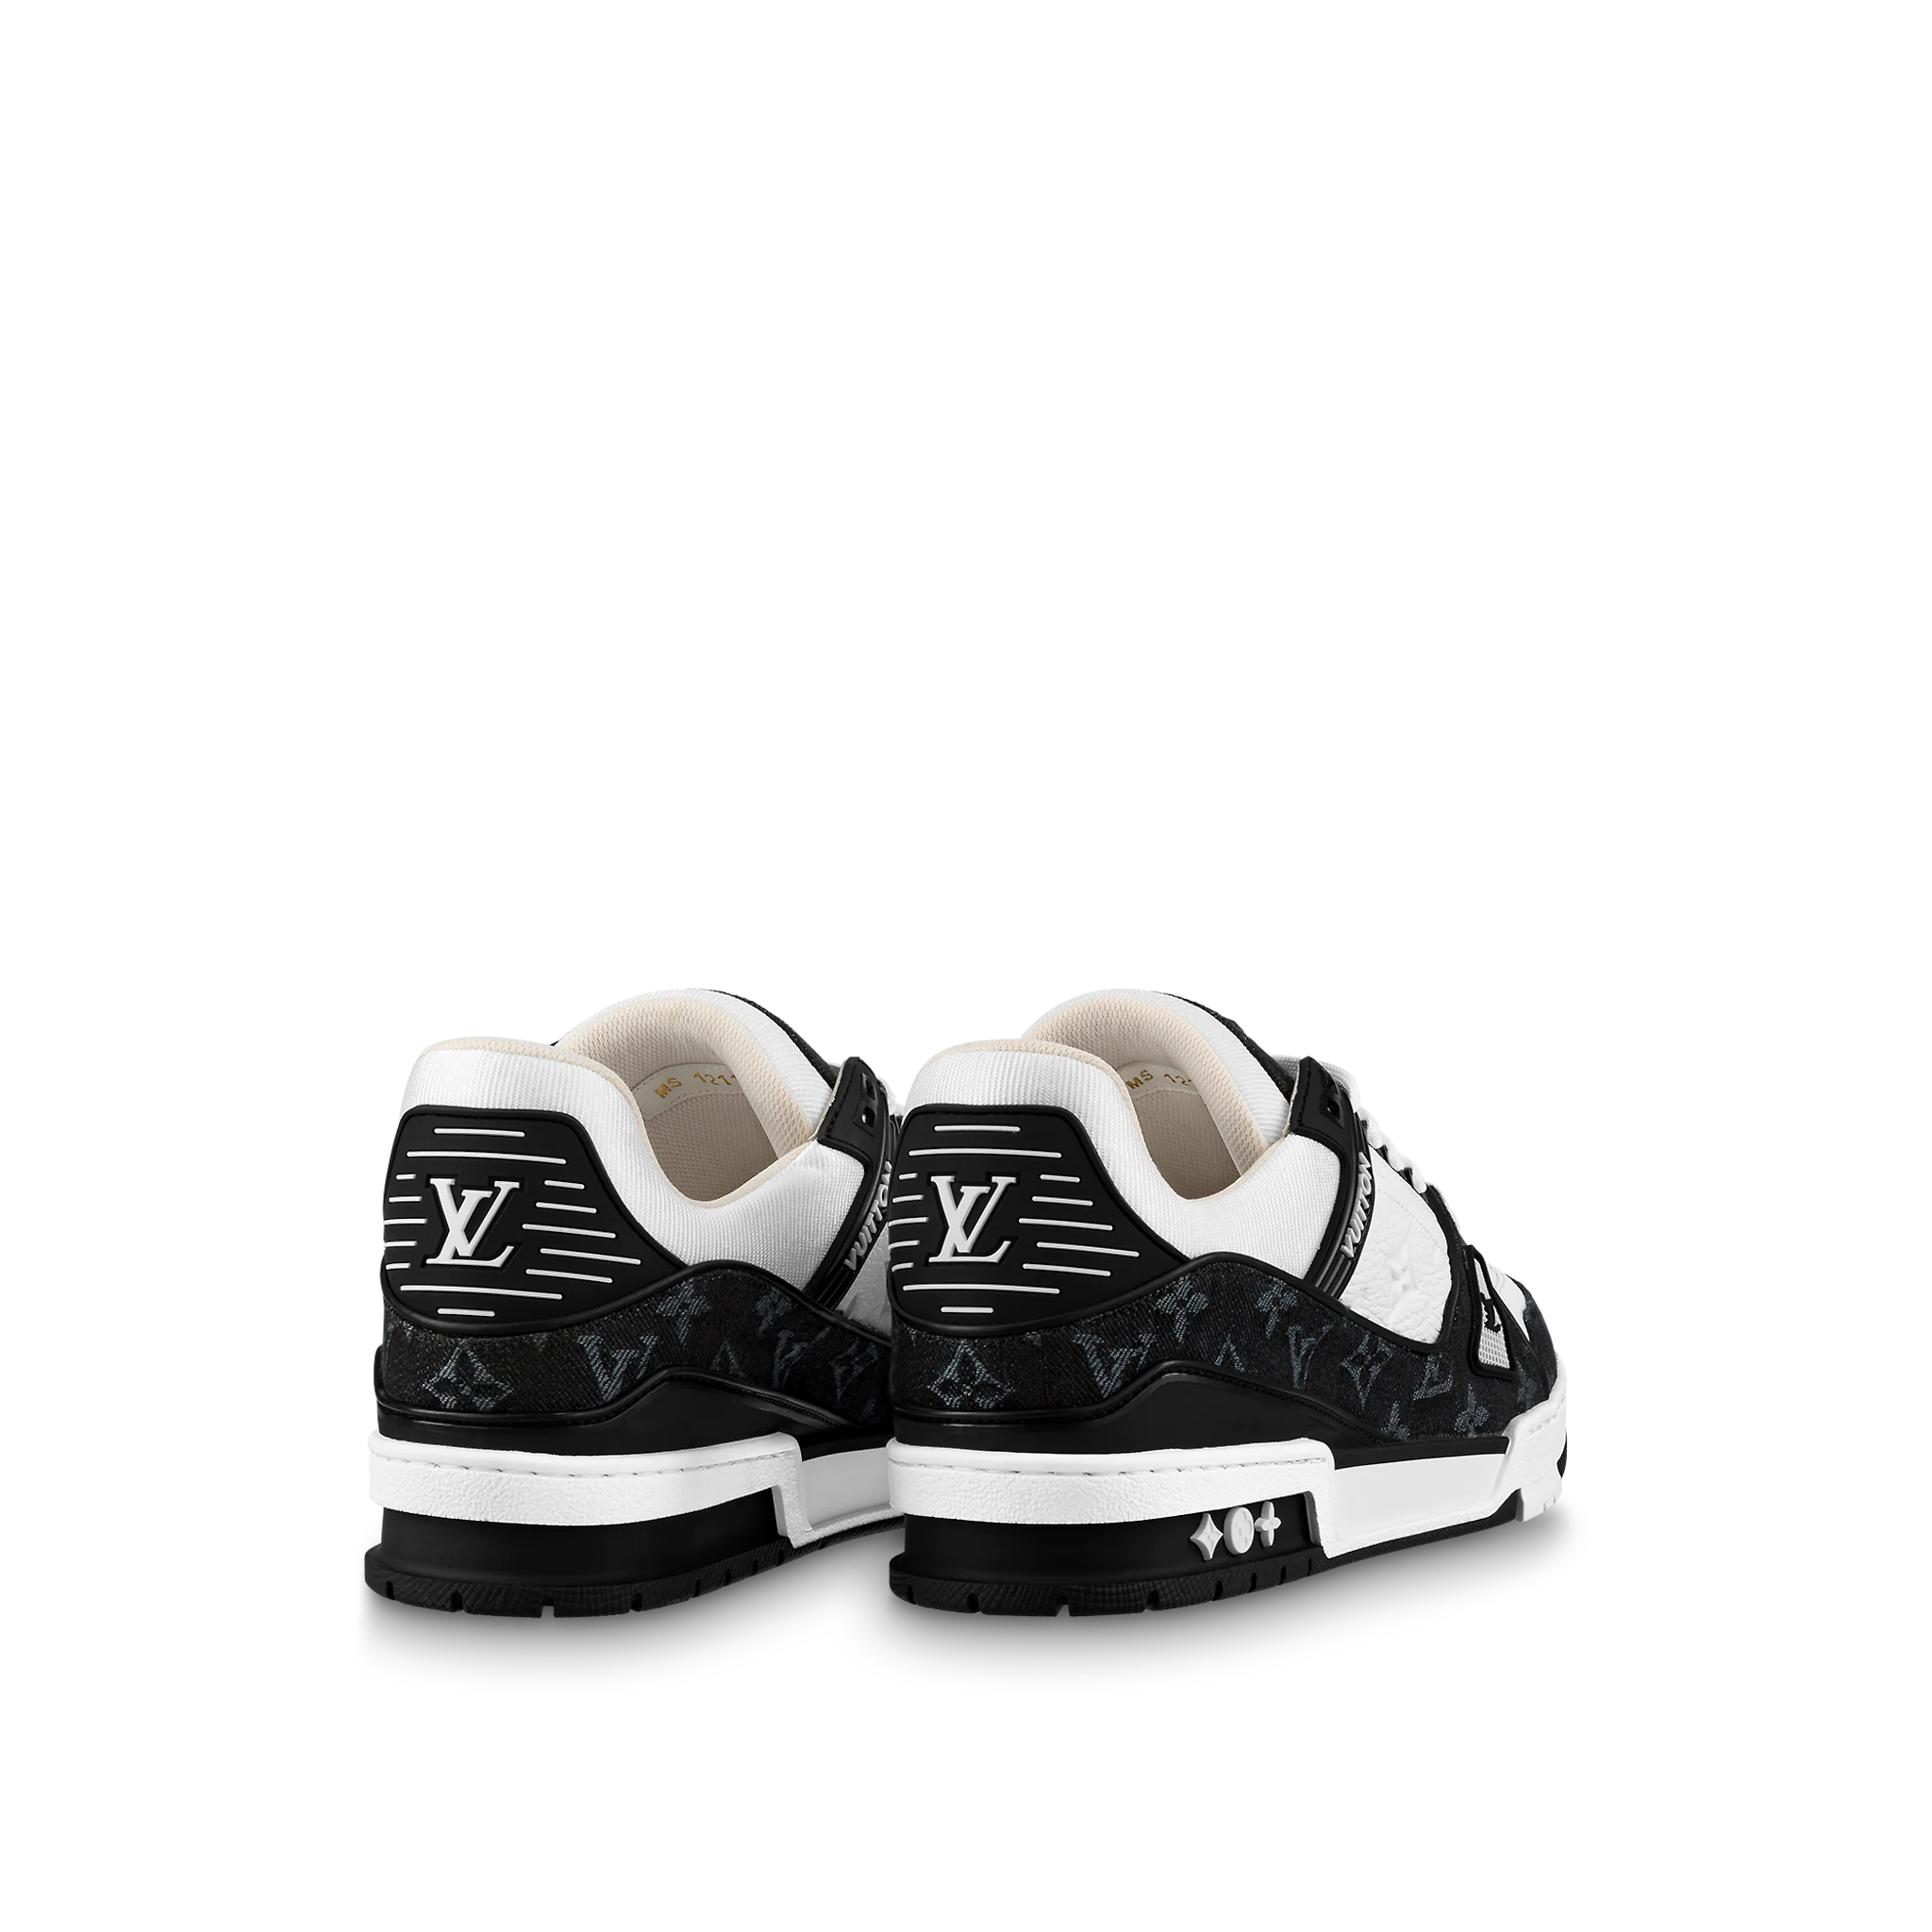 Original LV black sandals shoe | Olist Men's Louis Vuitton Sandals shoes  For Sale In Nigeria